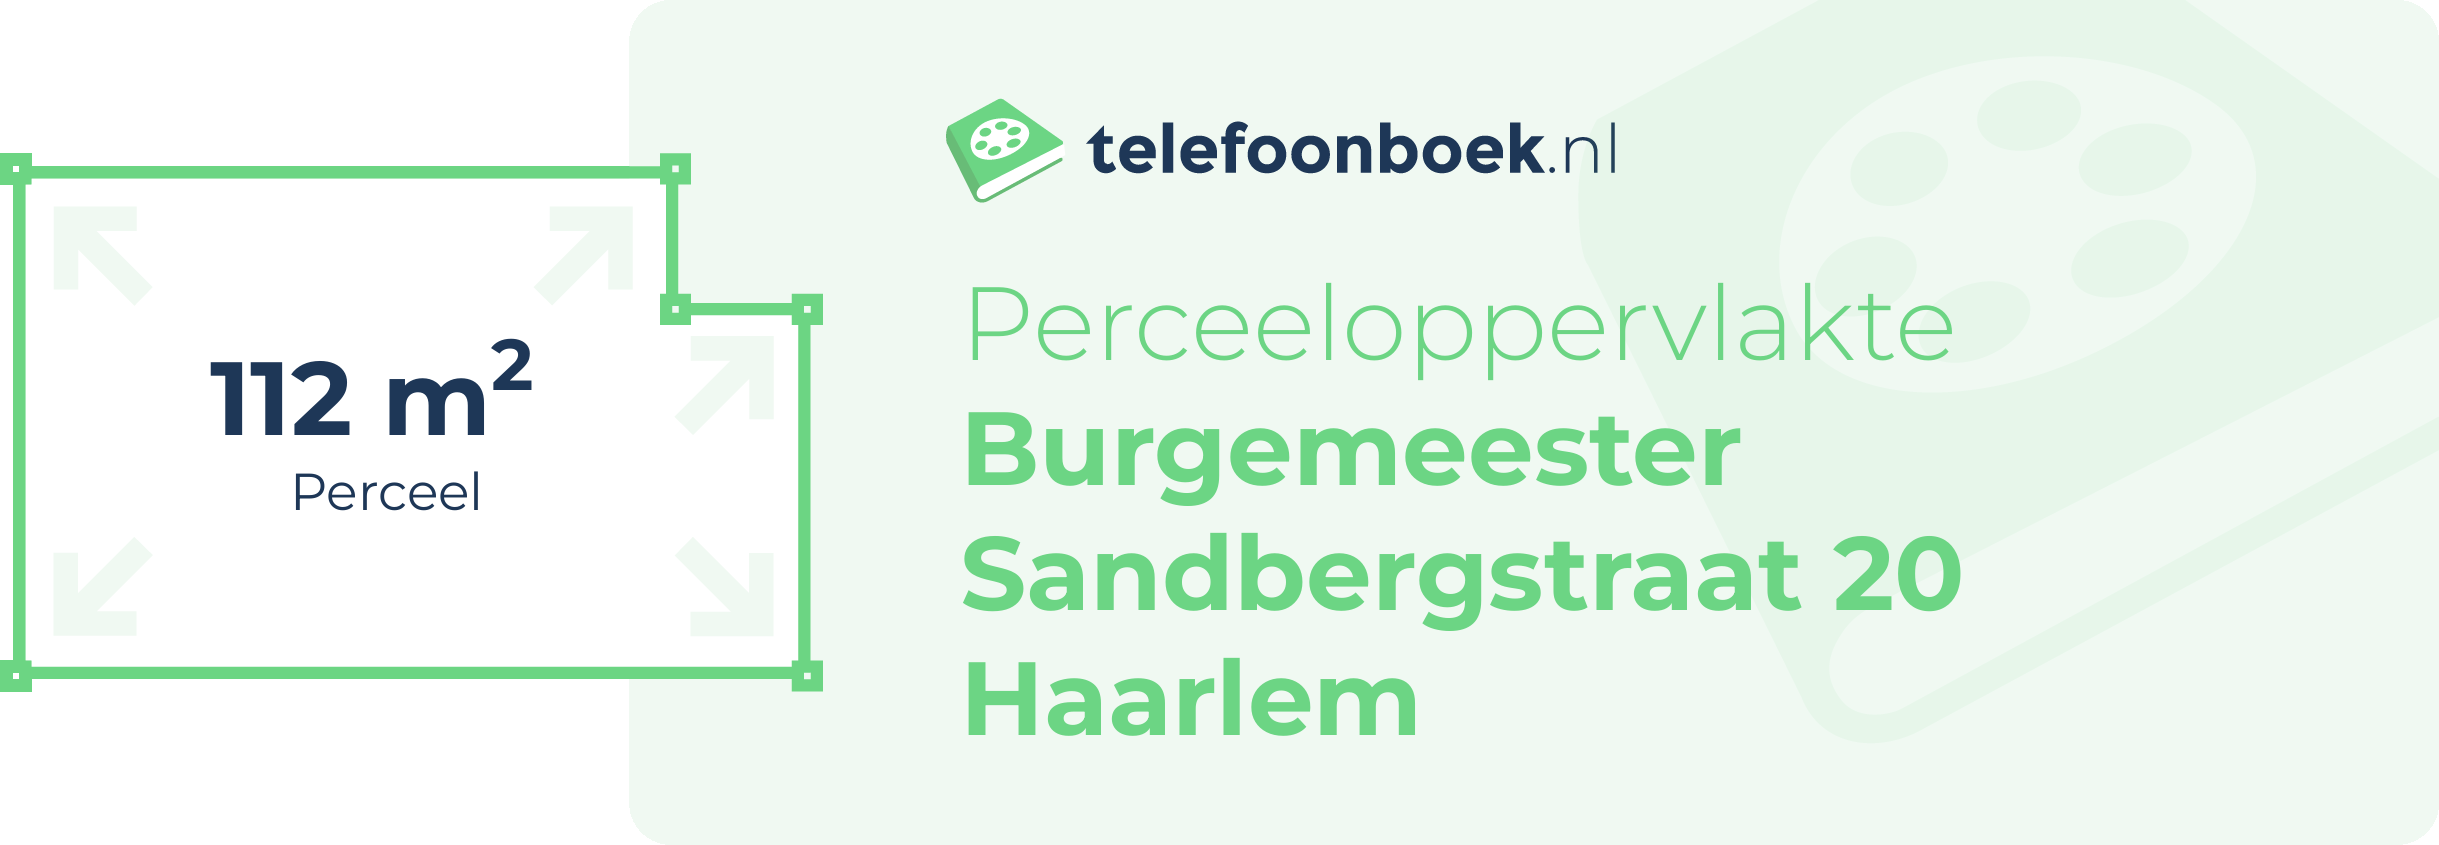 Perceeloppervlakte Burgemeester Sandbergstraat 20 Haarlem